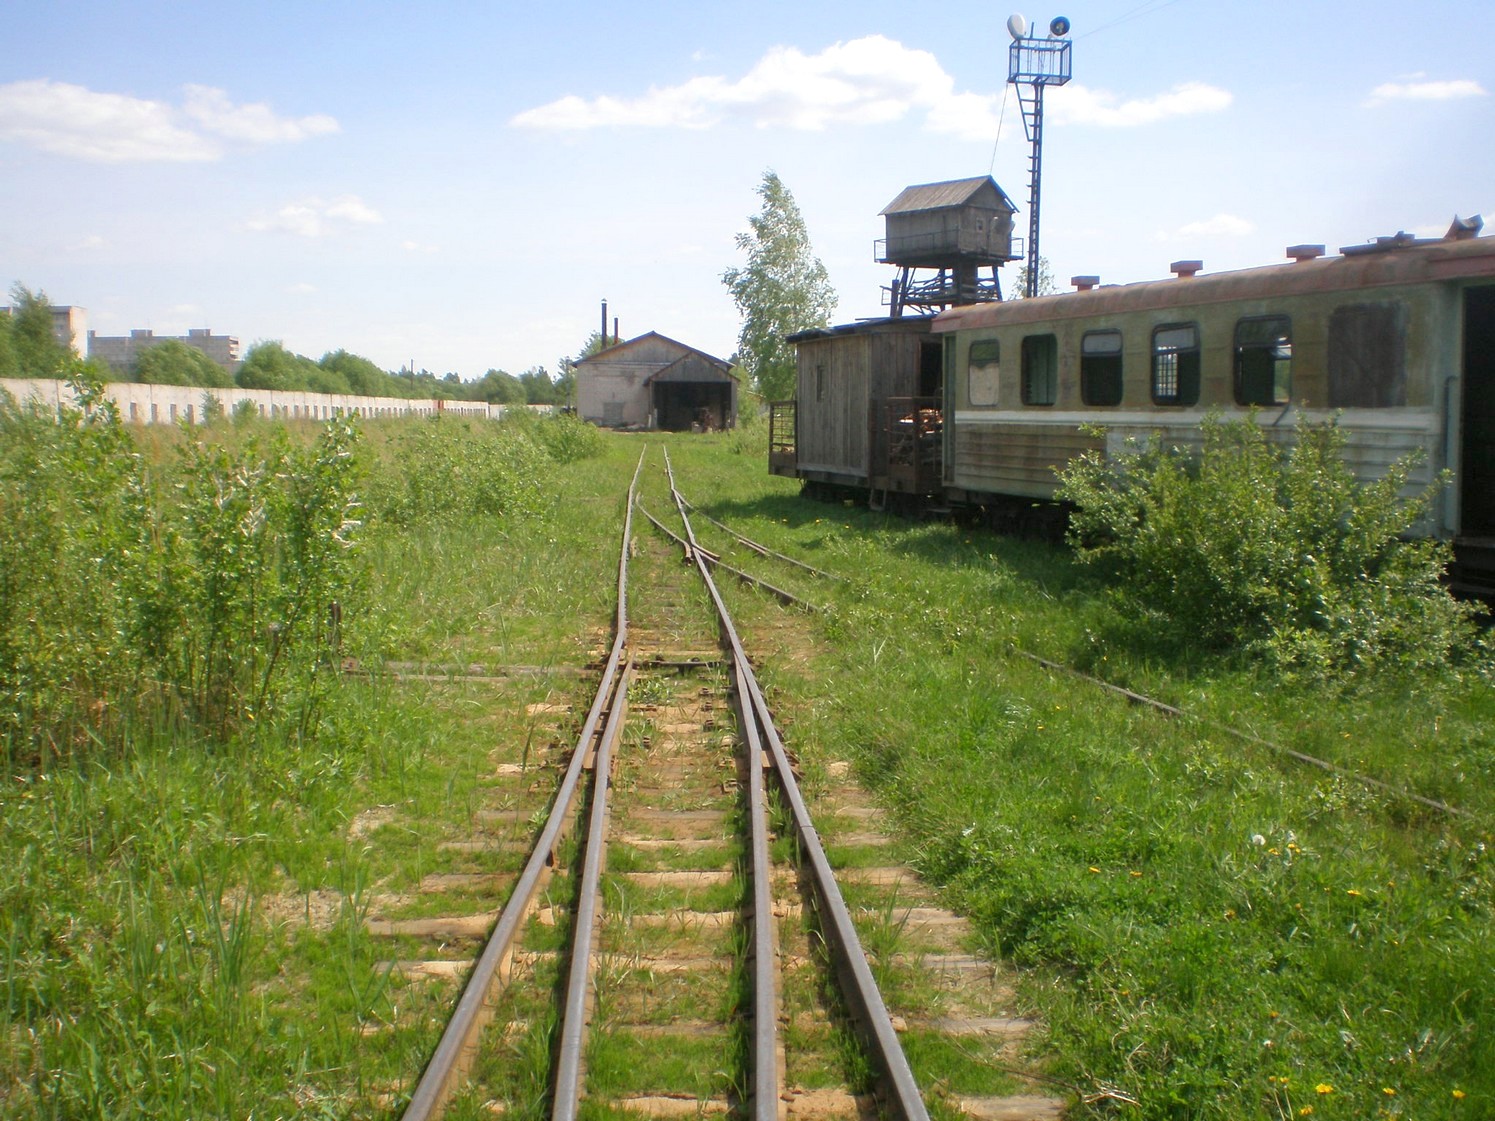 Узкоколейная железная дорога Гусевского предприятия промышленного железнодорожного транспорта — фотографии, сделанные в 2009 году (часть 6)